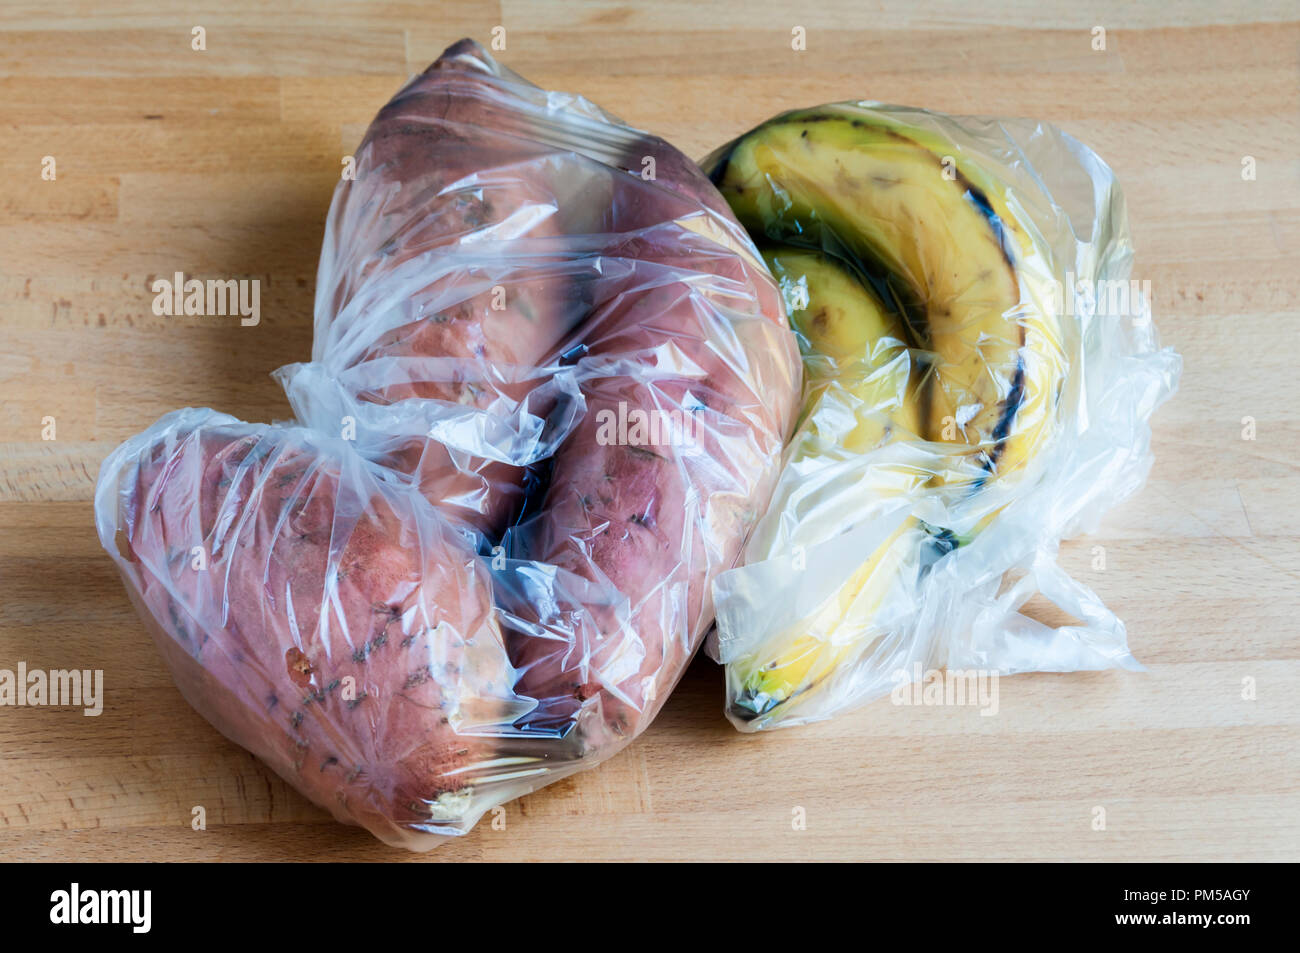 Frisches Obst und Gemüse vom Supermarkt in Plastiktüten. Waitrose haben angekündigt, dass Ihre frischen Obst & Gemüse Taschen werden kompostierbar im Frühjahr 2019. Stockfoto